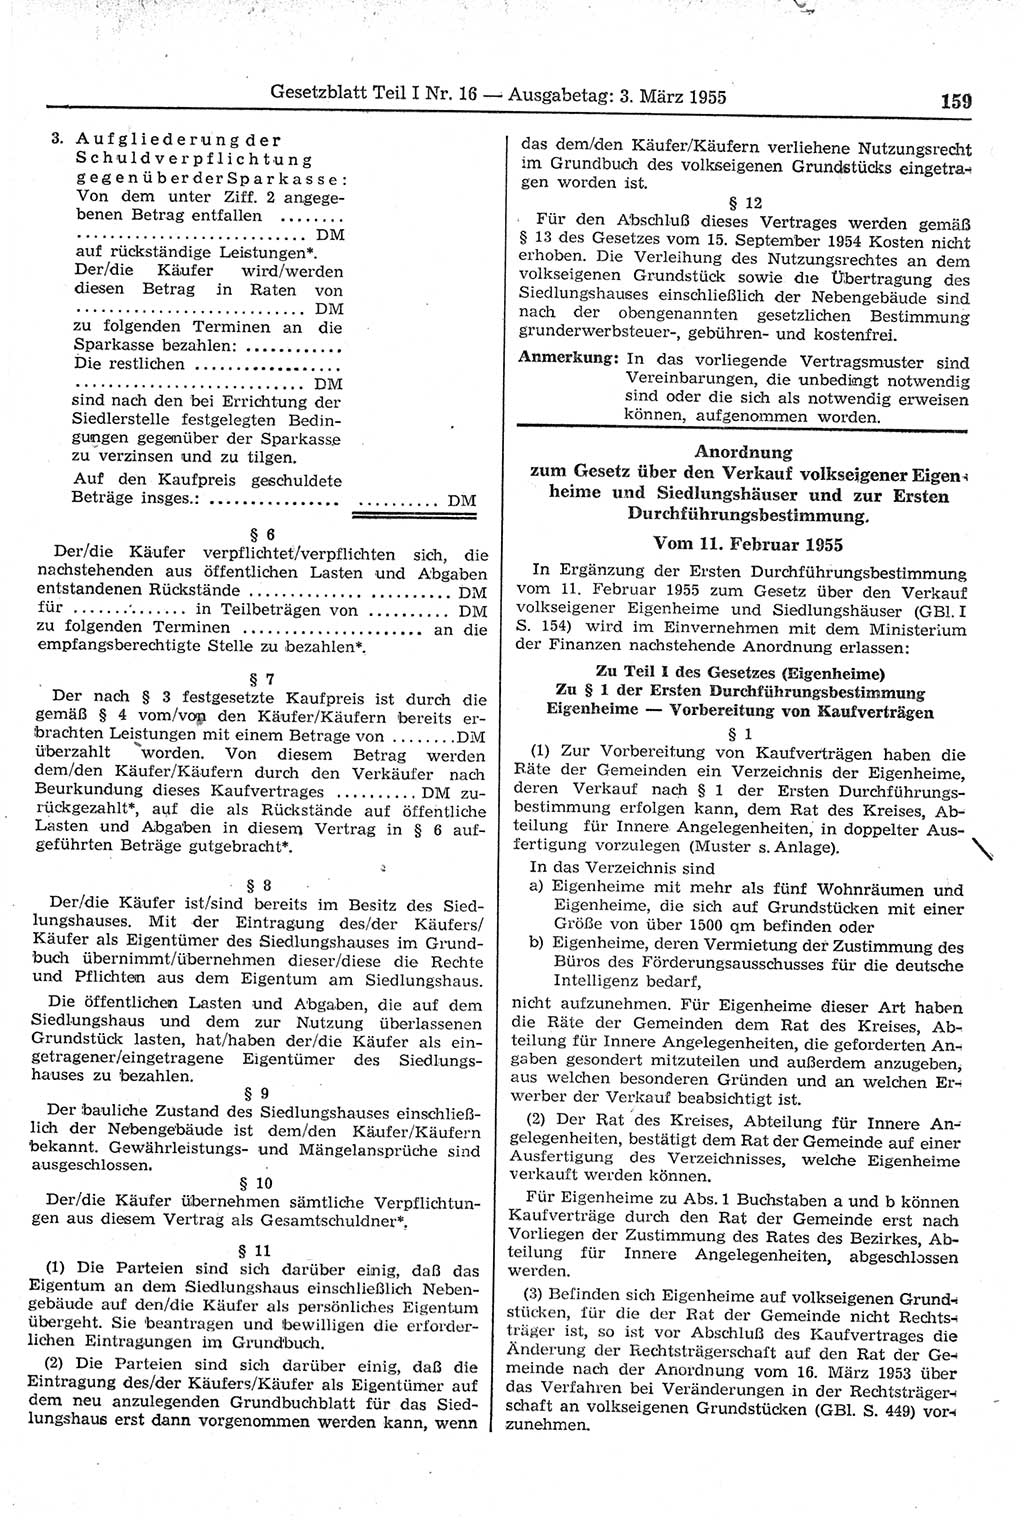 Gesetzblatt (GBl.) der Deutschen Demokratischen Republik (DDR) Teil Ⅰ 1955, Seite 159 (GBl. DDR Ⅰ 1955, S. 159)